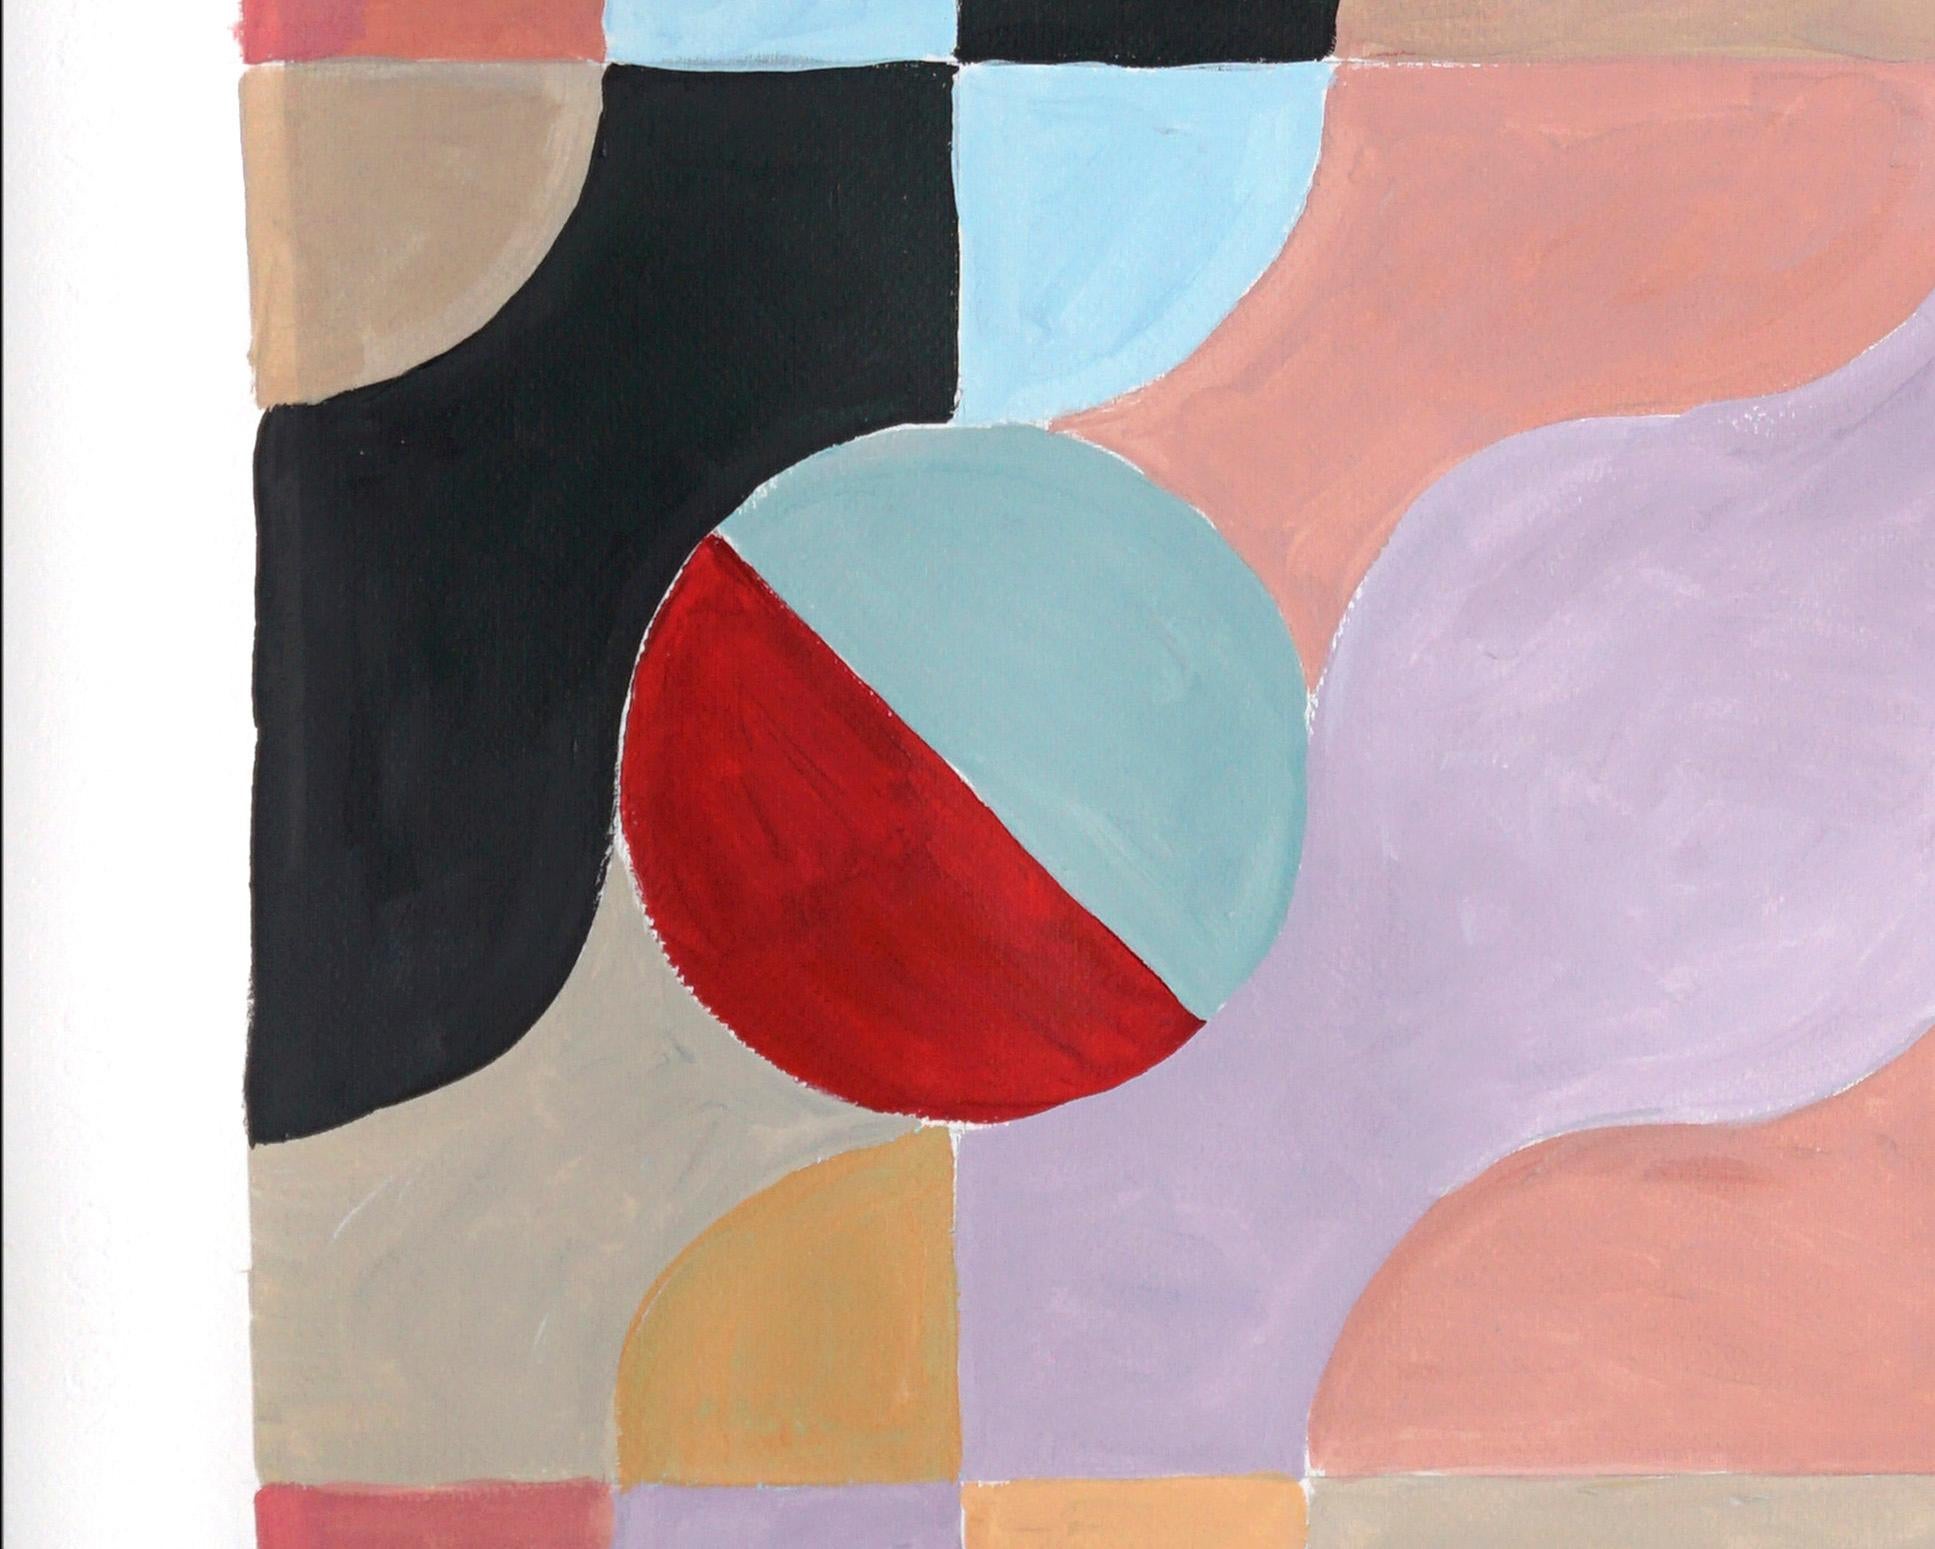 Die Gemäldeserie von Natalia Roman lässt sich von geometrischen, minimalistischen Formen und Gemälden aus den Anfängen der Moderne inspirieren, wobei der Schwerpunkt auf den Art-déco-Formen der 30er, 40er und 50er Jahre liegt. Die subtilen, aber